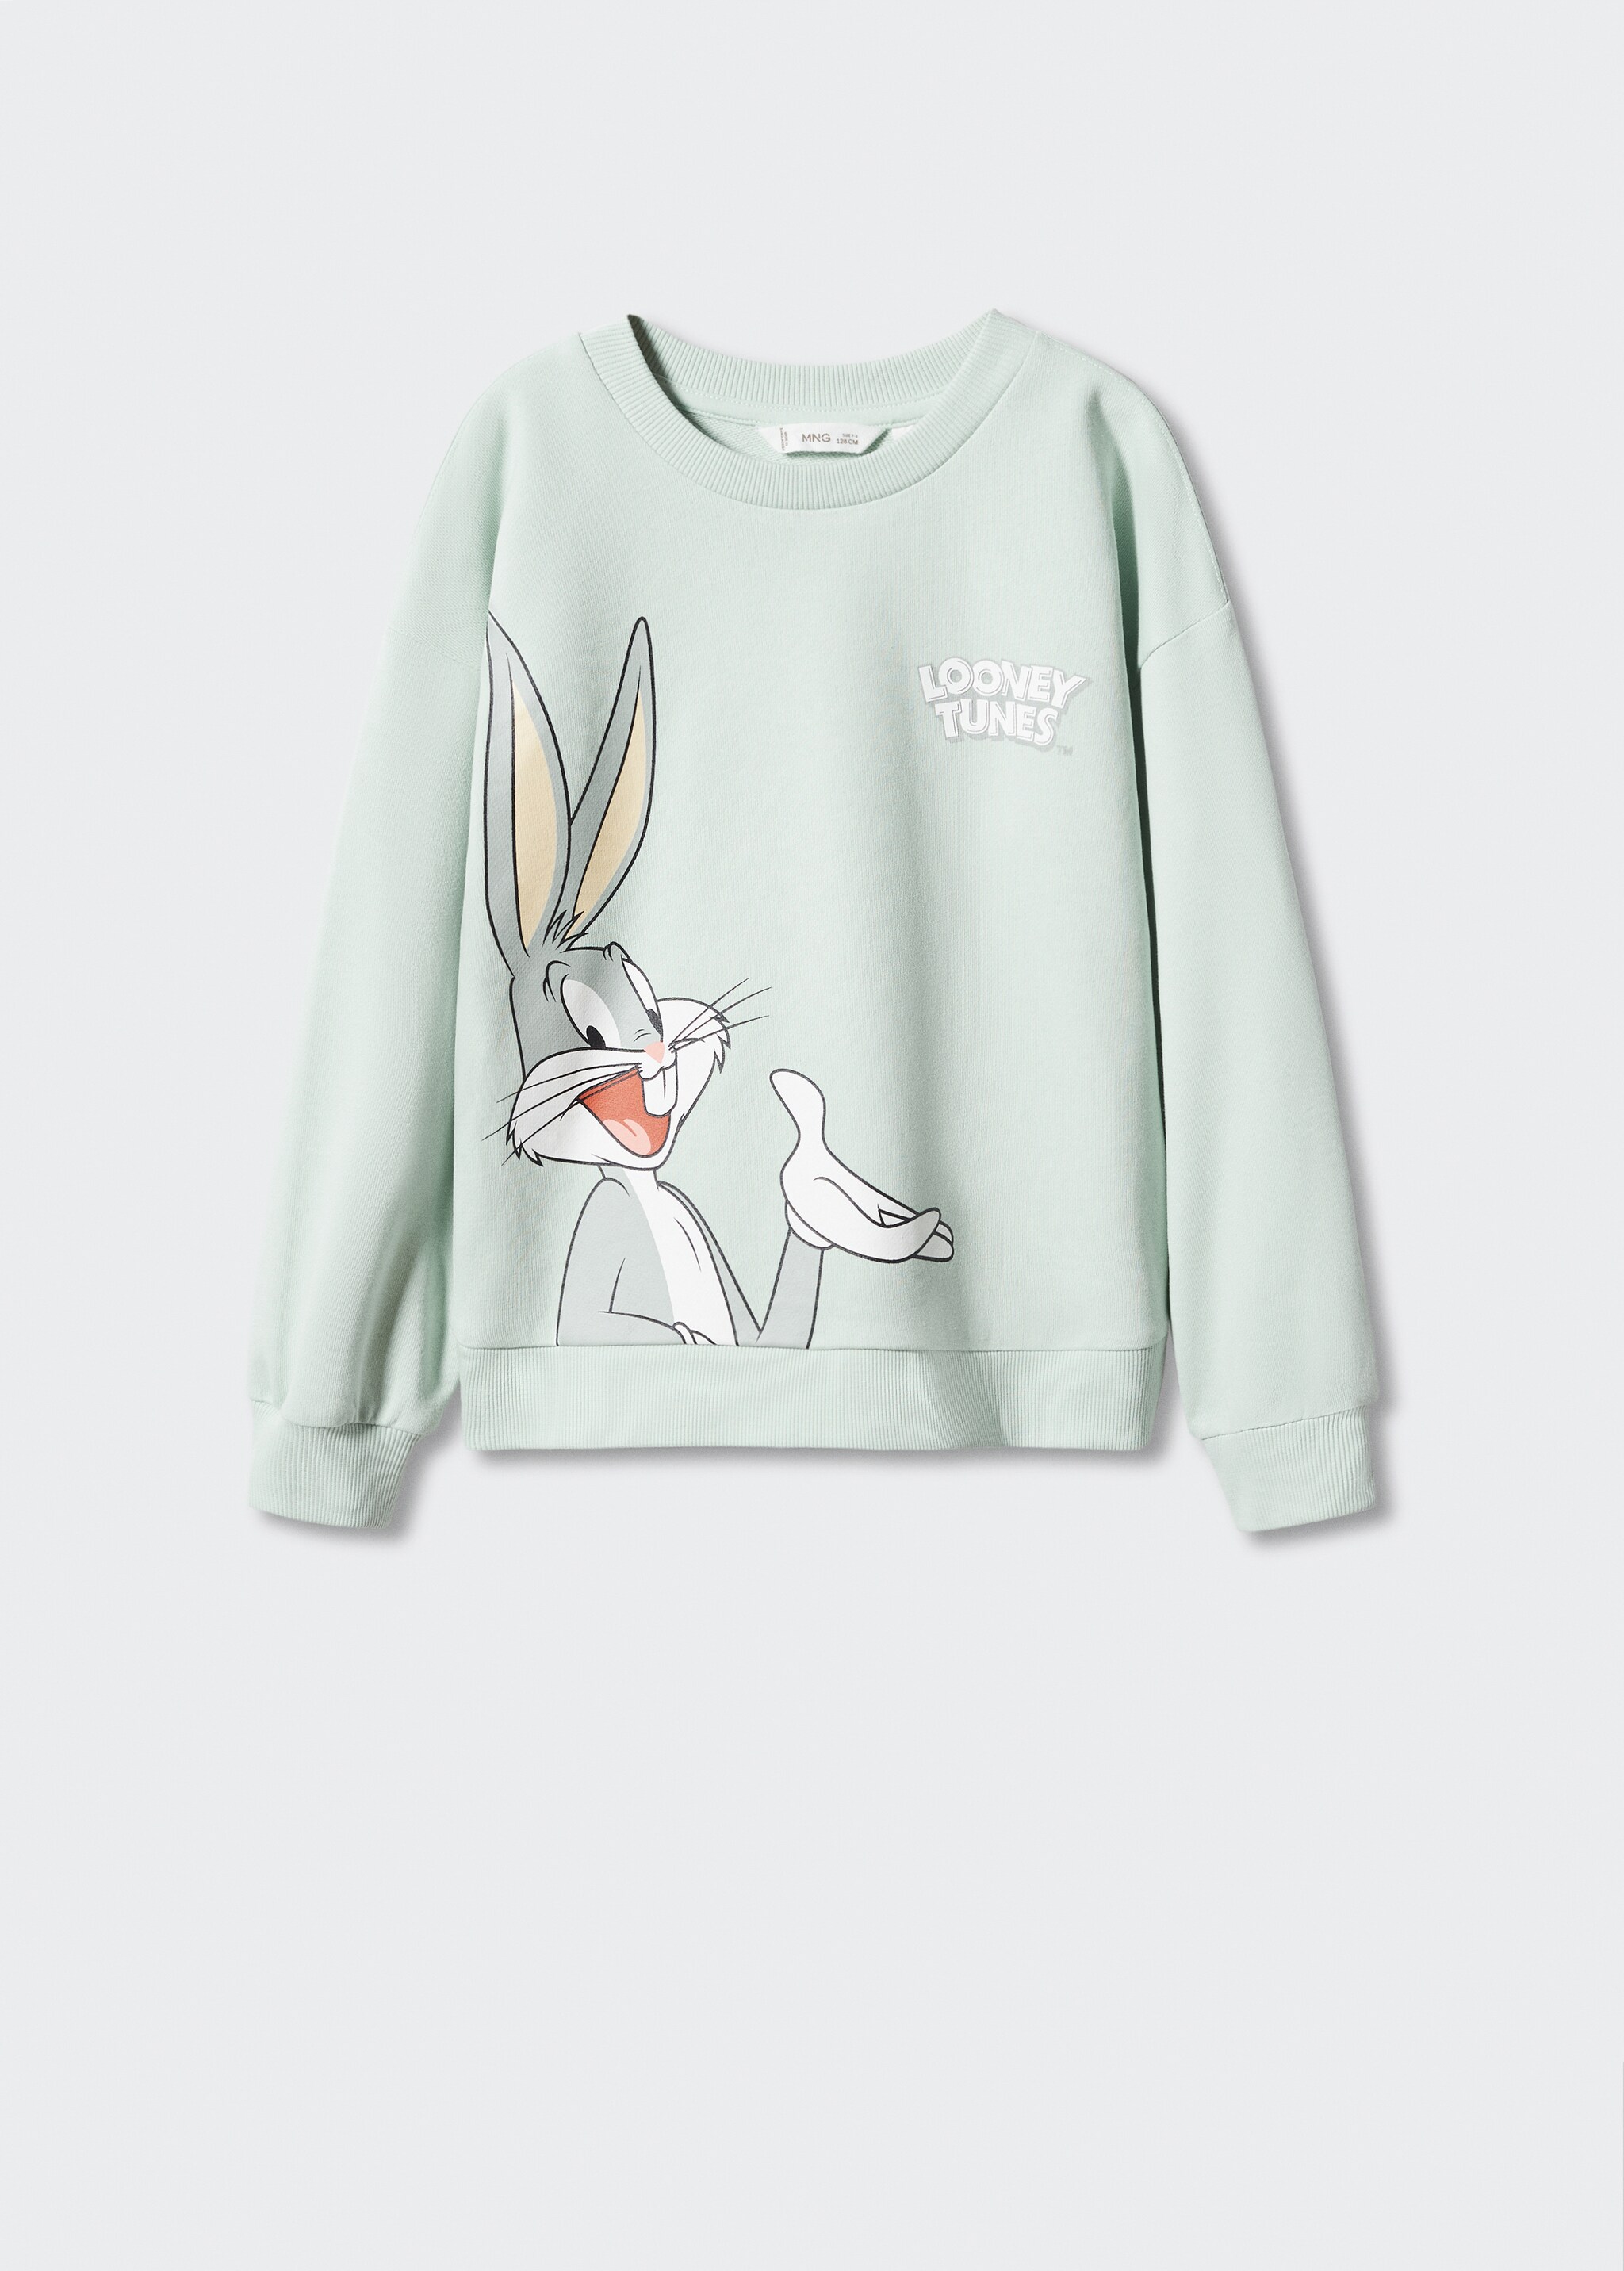 Bugs Bunny sweatshirt - Article without model